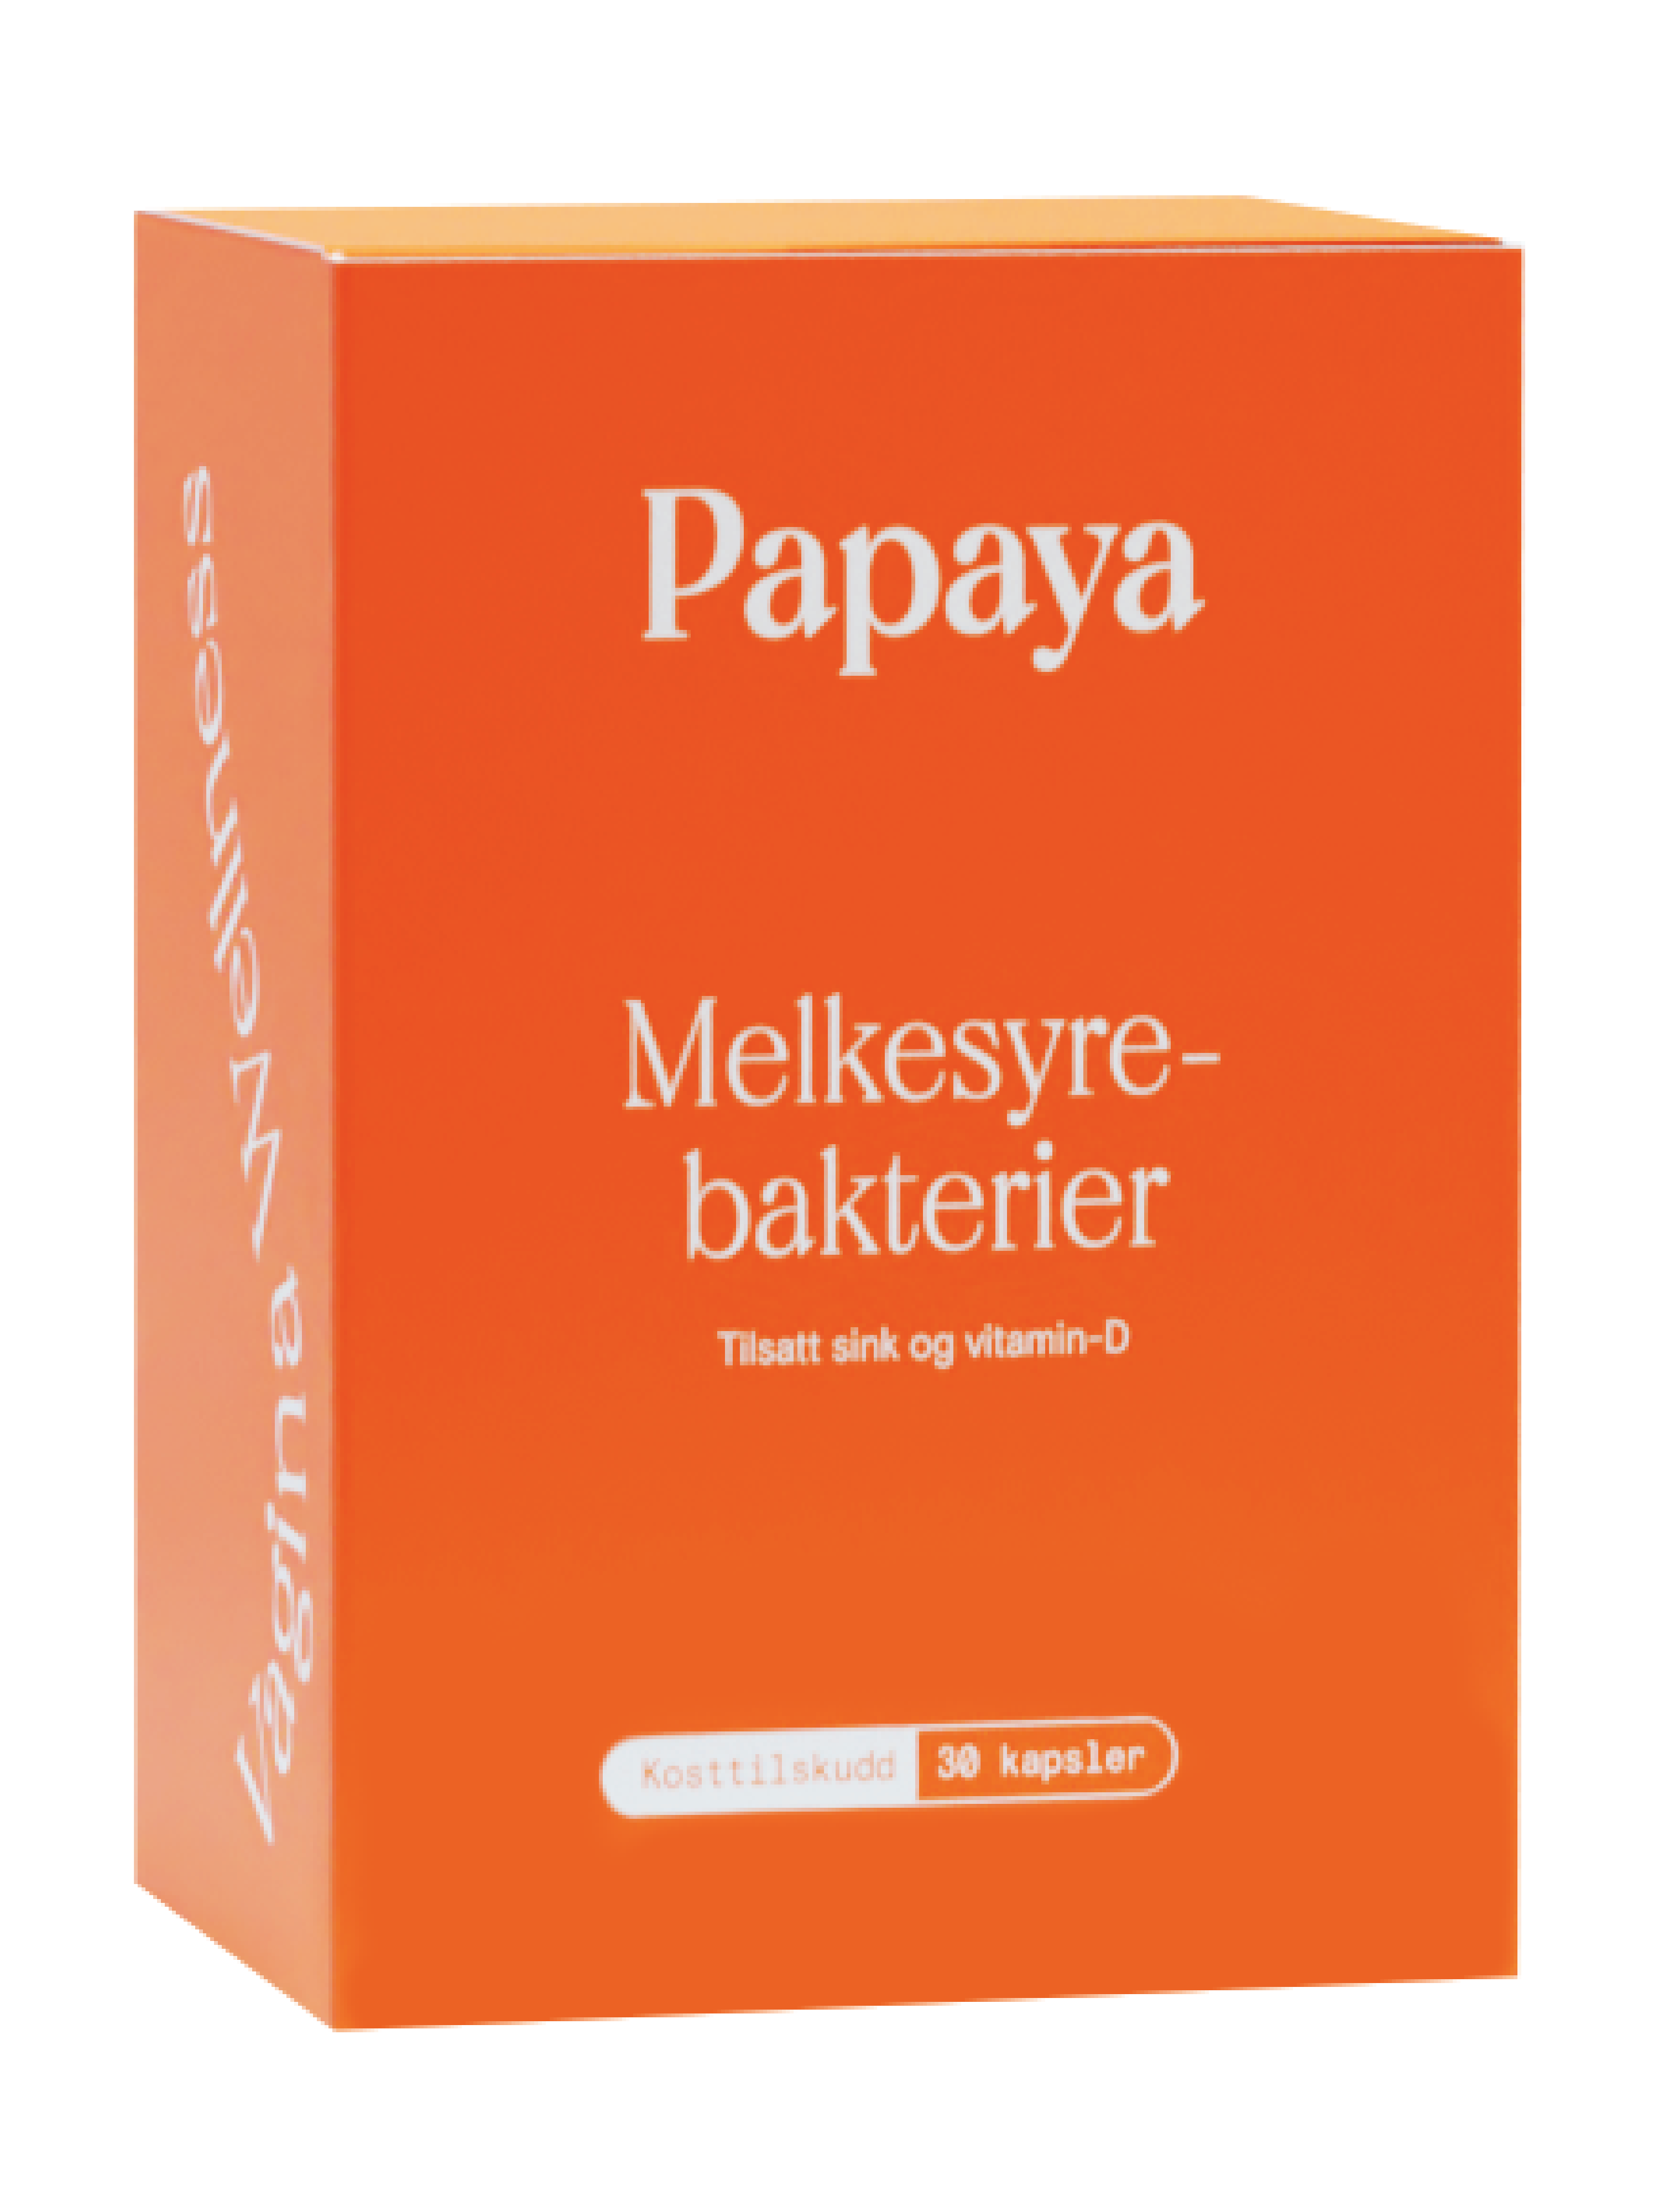 Papaya Melkesyrebakterier kapsler, 30 stk.